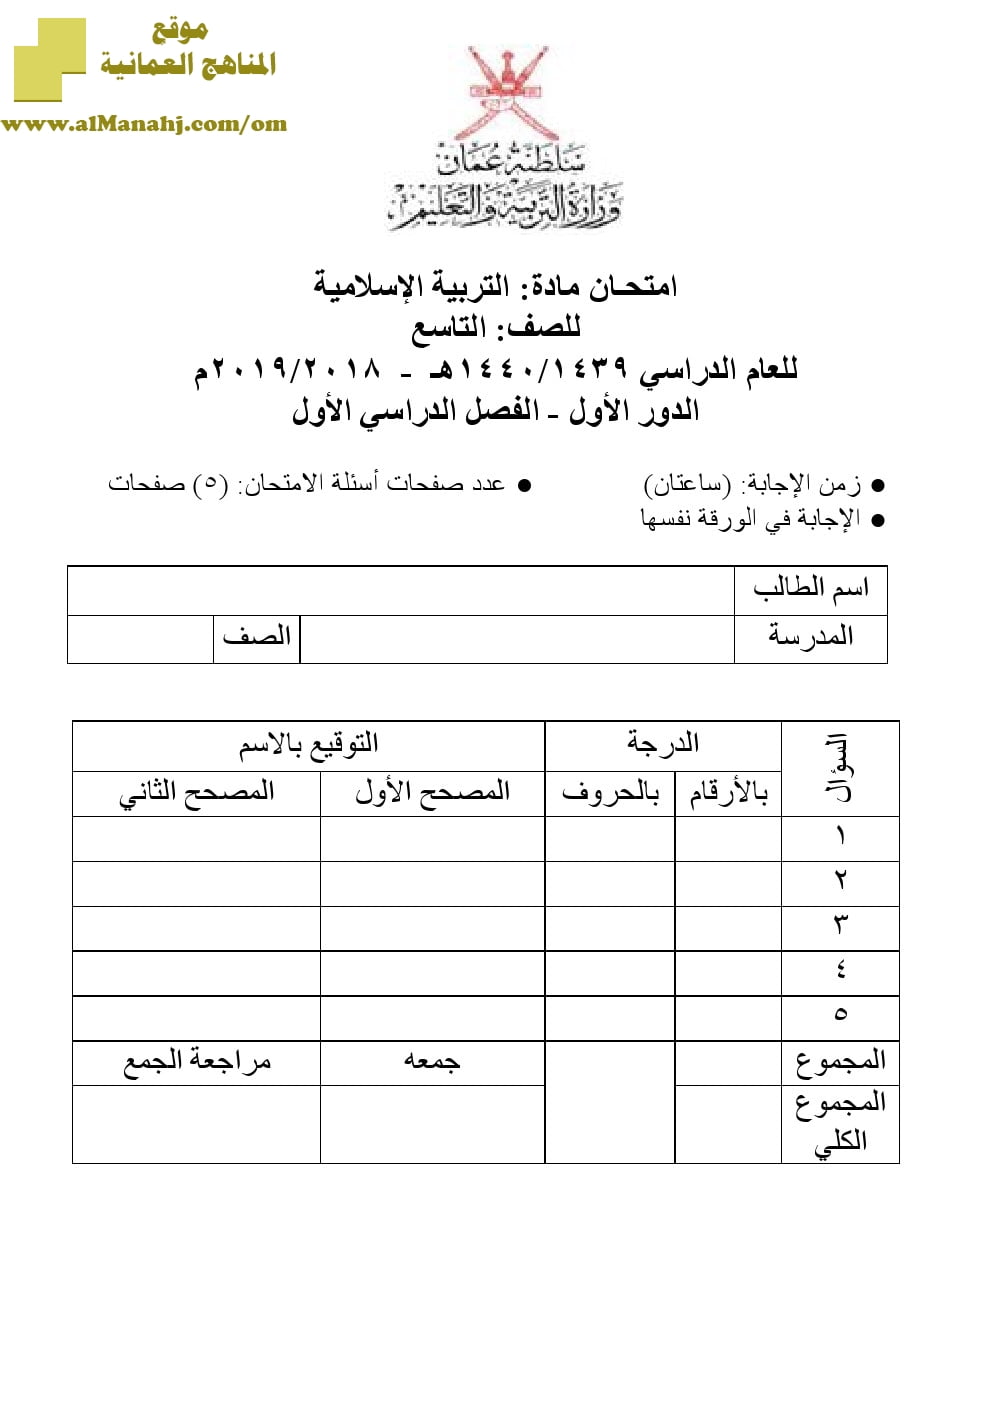 أسئلة وإجابة الامتحان الرسمي الدور الأول والثاني (تربية اسلامية) التاسع